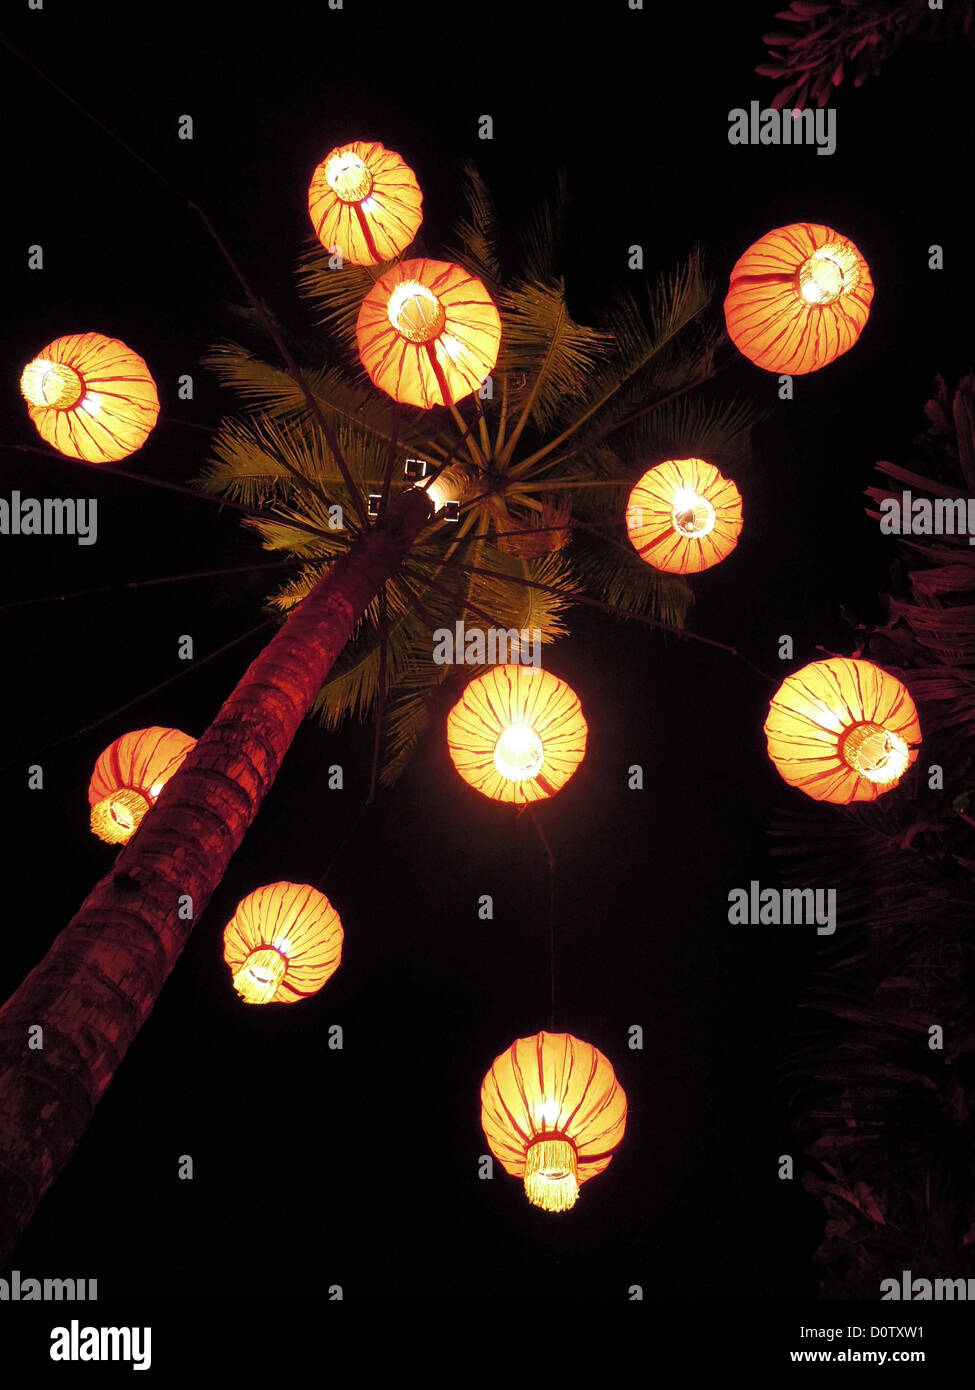 Laos, Asia Prabang, Lampion, luces en la noche, la noche, palm, Foto de stock